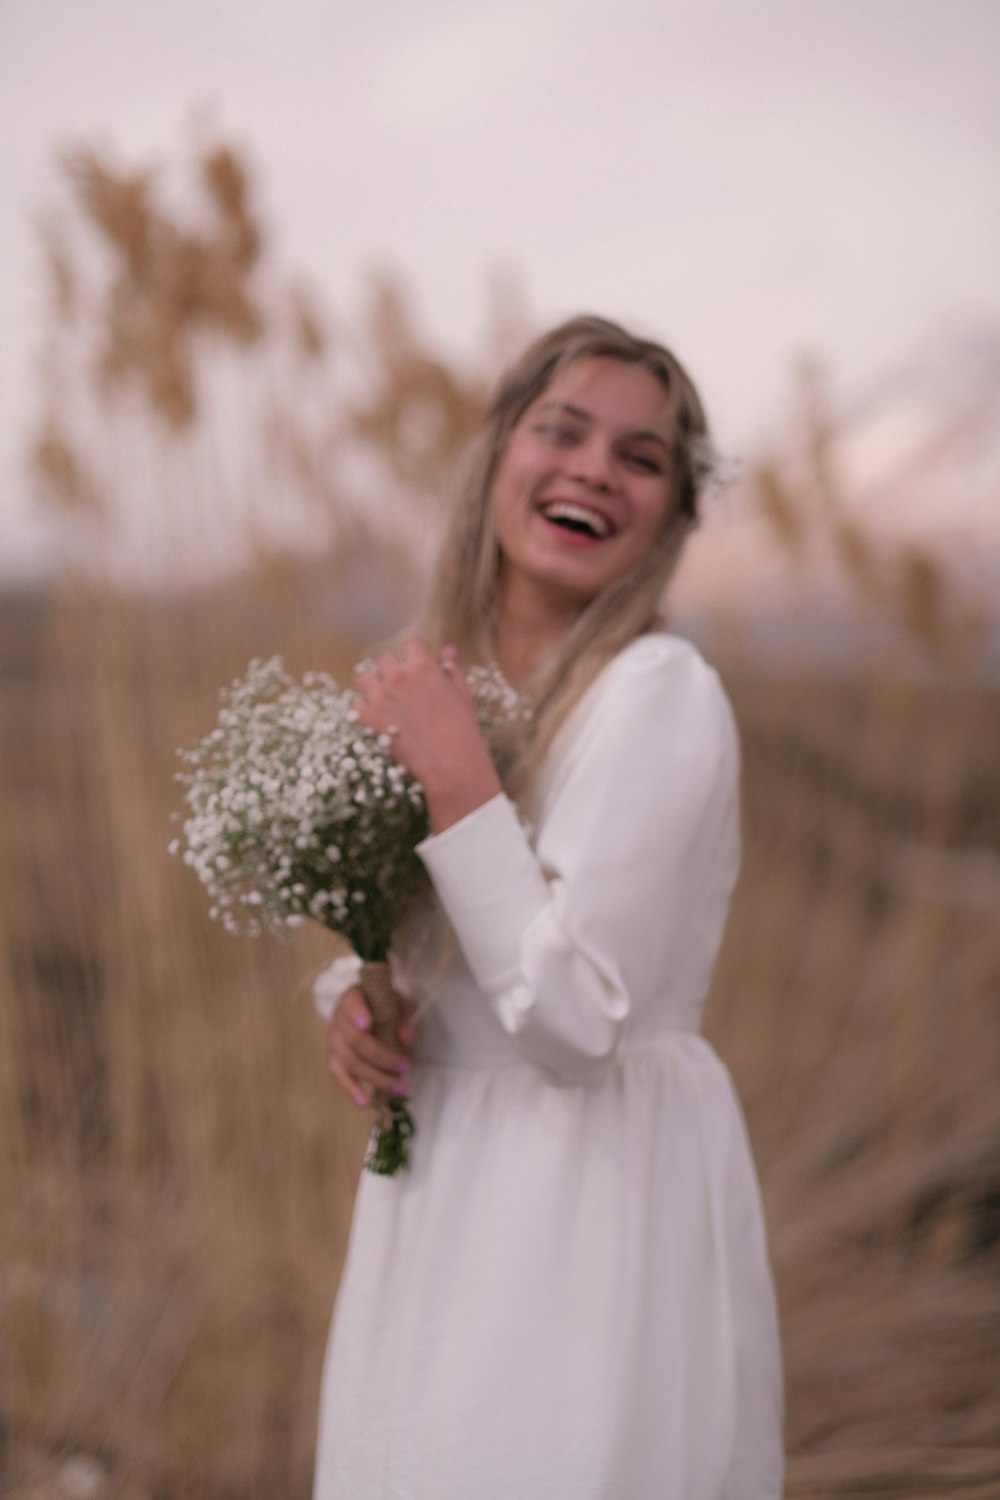 Una mujer con un vestido blanco sosteniendo un ramo de flores